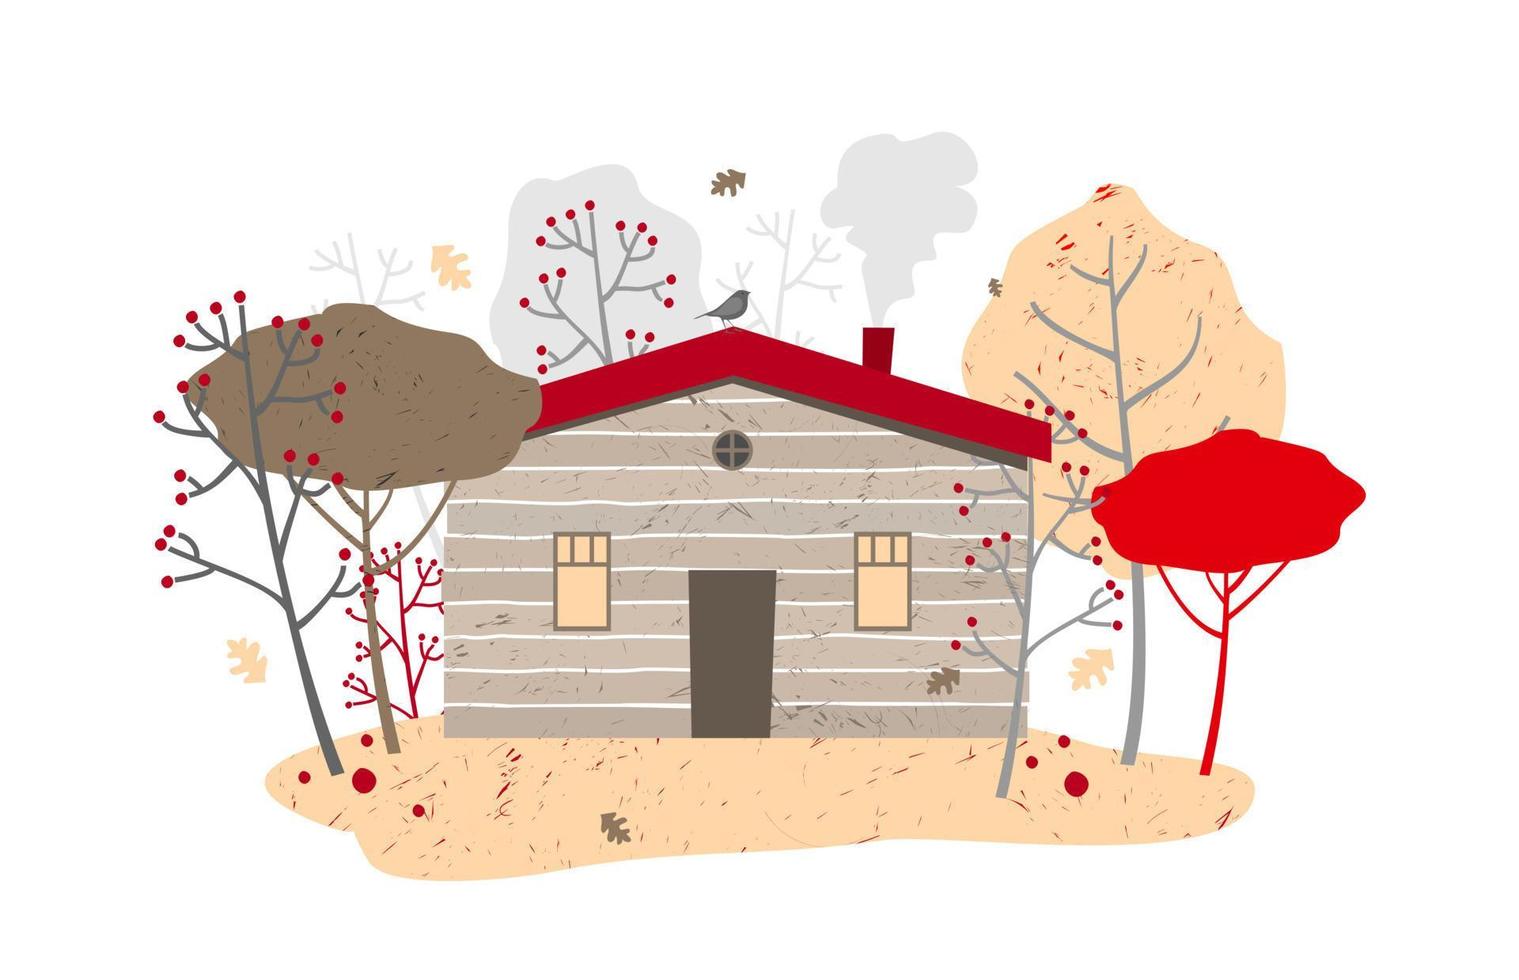 houten huis met verwarming tussen herfst bomen, blad val. vector